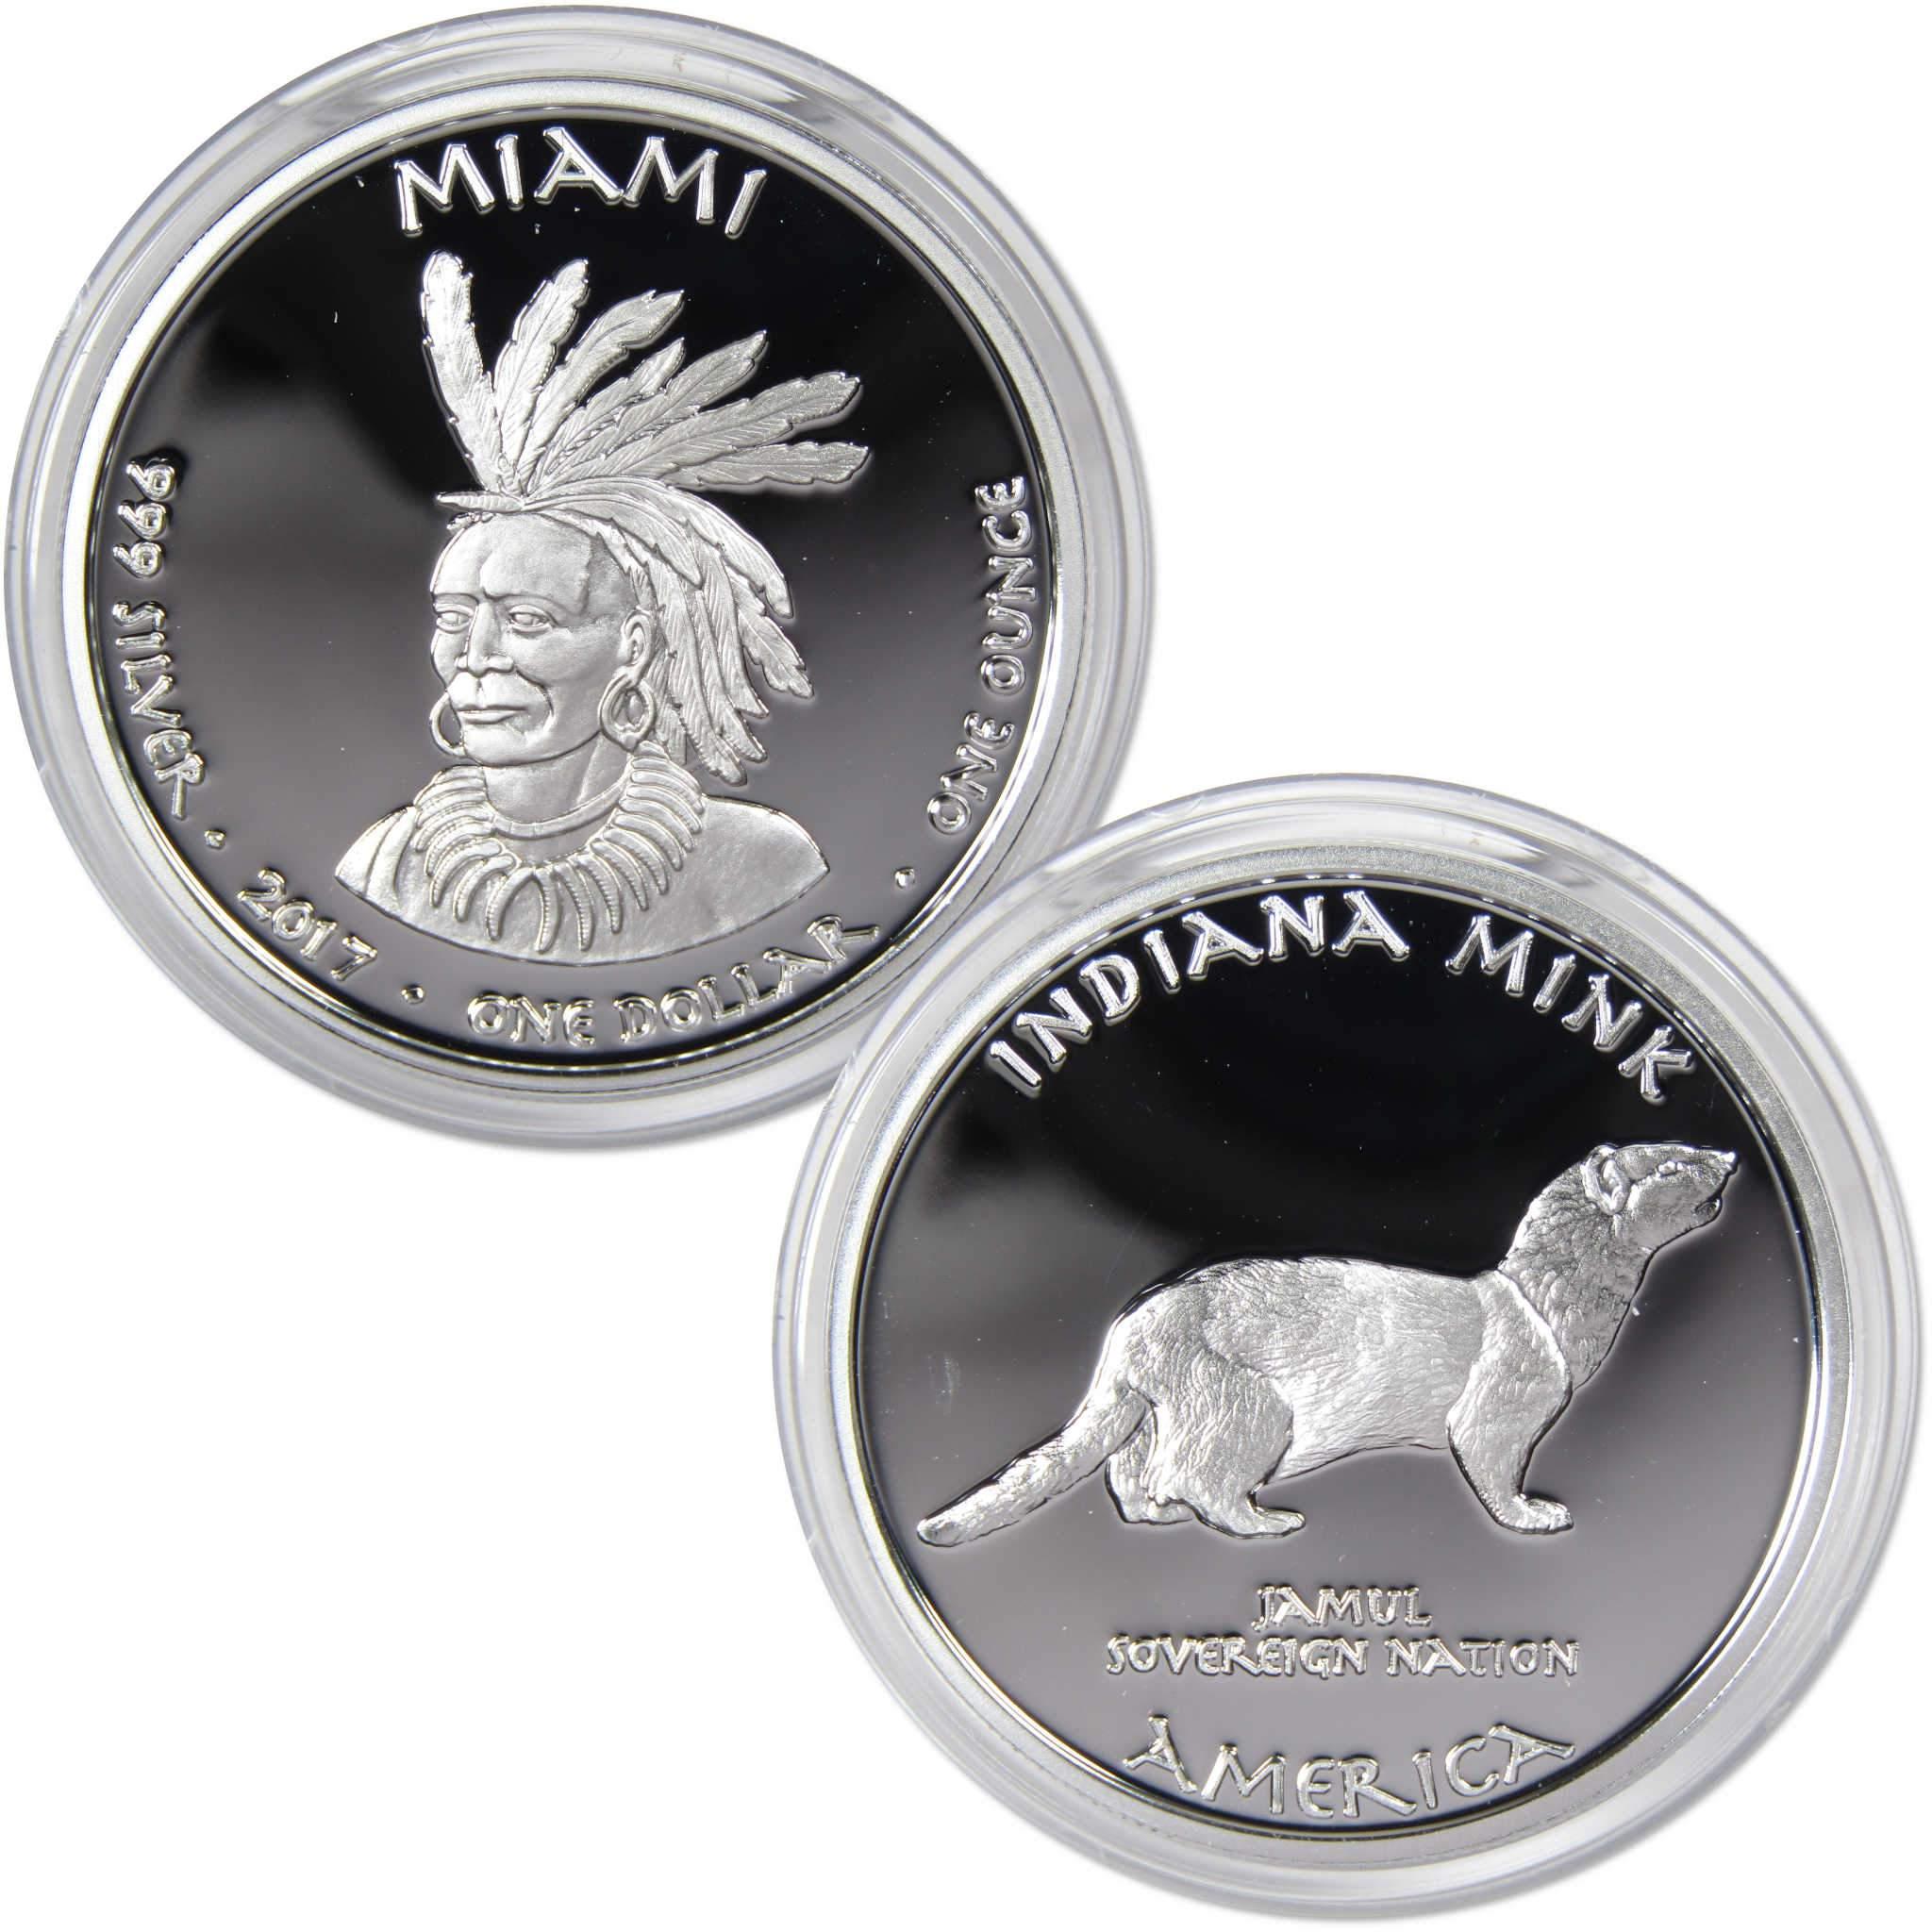 2017 Native American Jamul Miami Indiana Mink 1 oz .999 Fine Silver $1 Proof